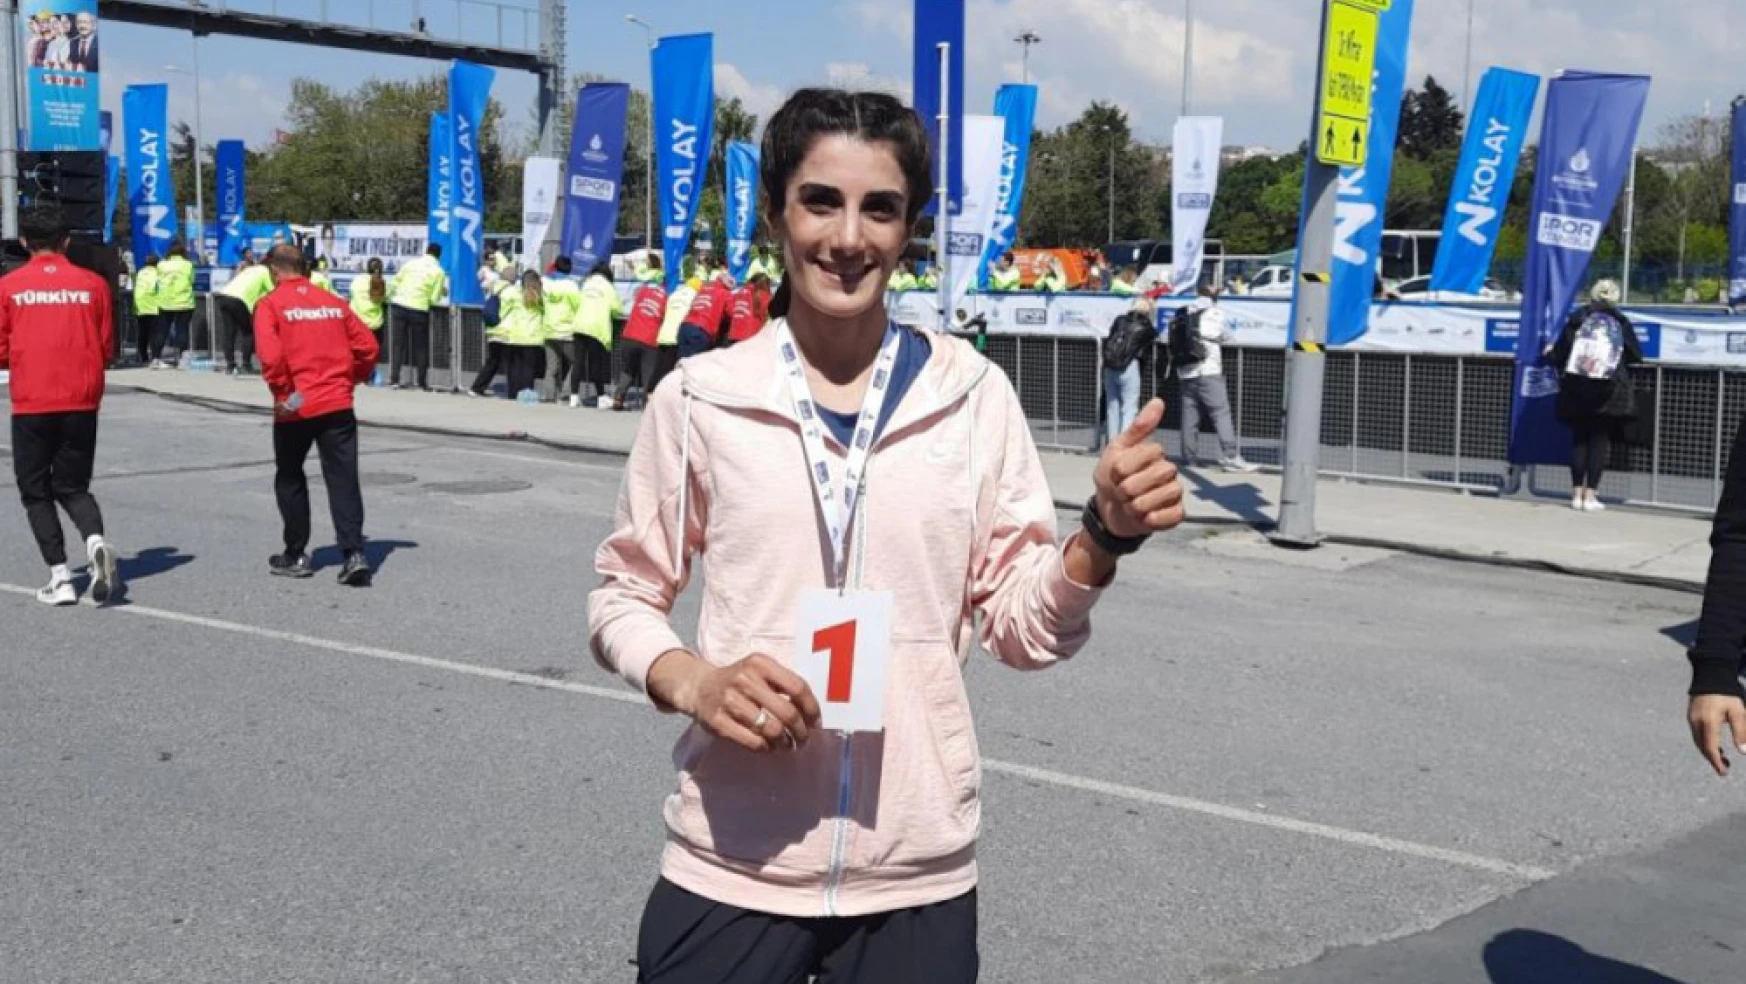 Depreme kampta yakalanan Yayla Gönen yarı maratonda birinci oldu